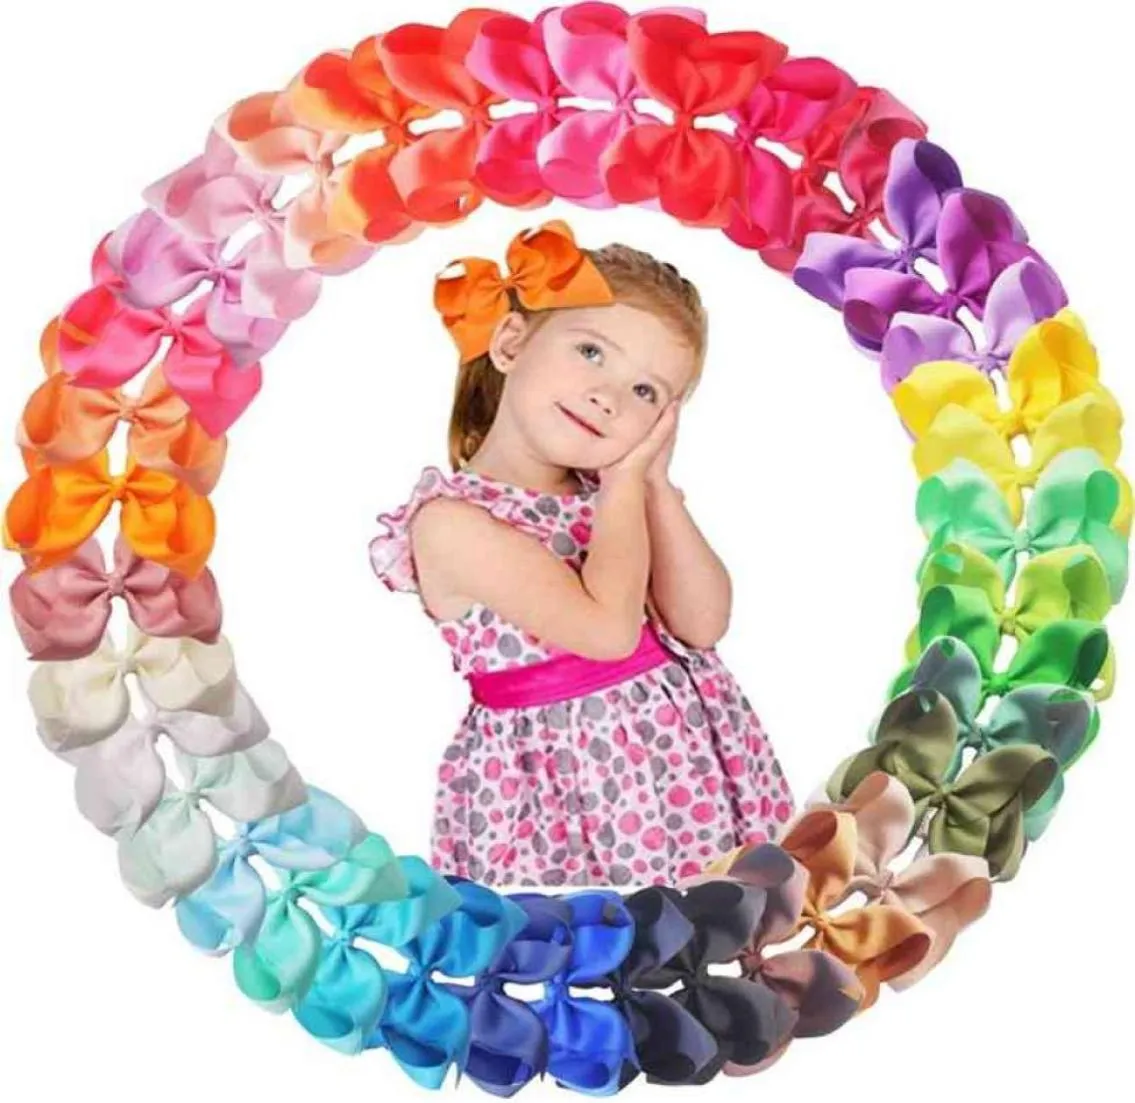 40 couleurs 6 pouces de cheveux Clips Clips Grands gros ruban grosgrain Bows Alligator Clips Accessoires de cheveux pour filles pour les enfants 21081747308